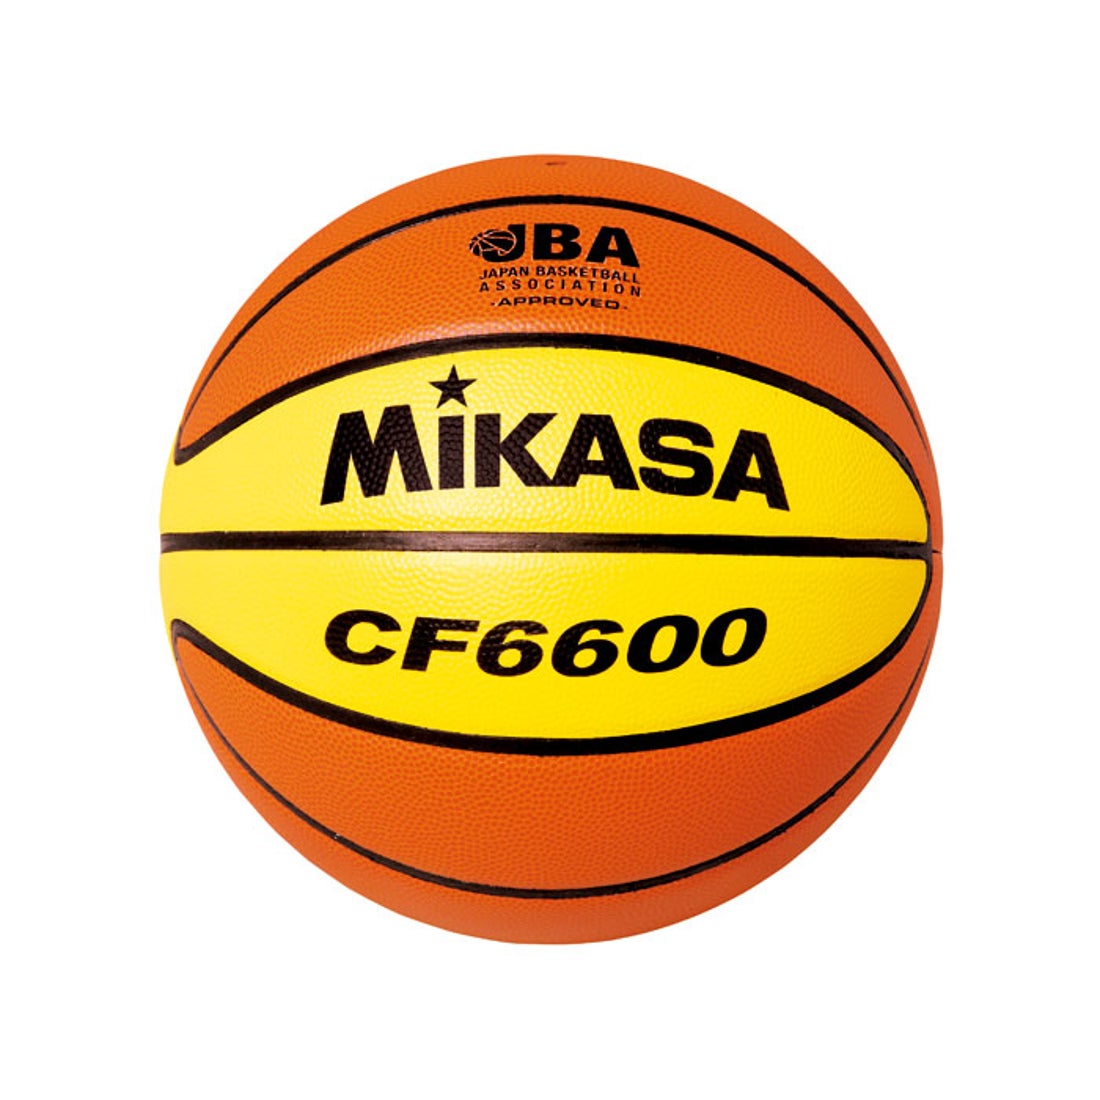 MIKASA ミカサ バスケットボール6号検定球(ブラウン) CF6600 ボール